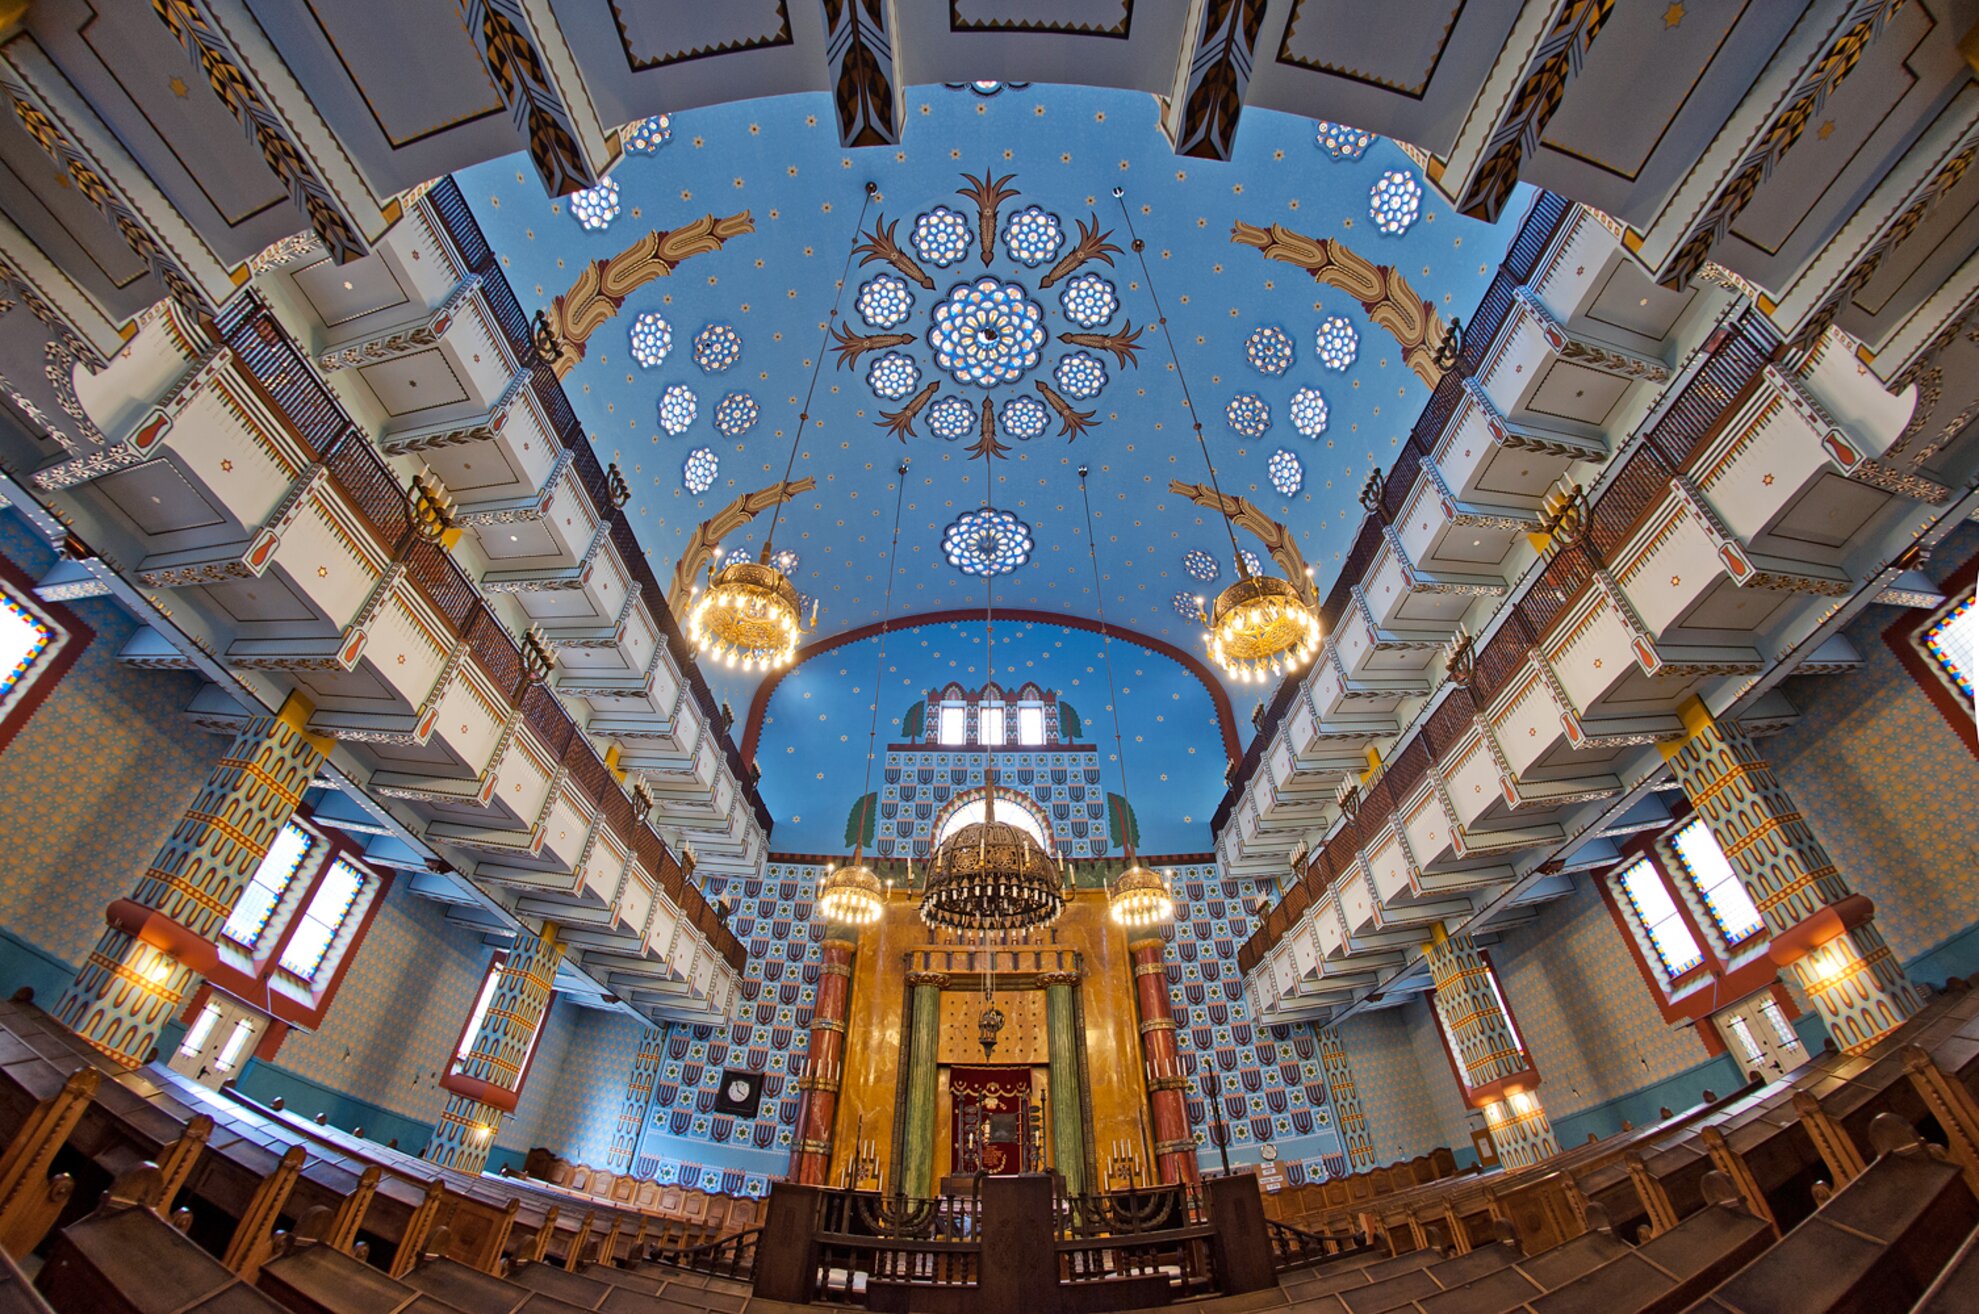 Kazinczy utca Synagogue